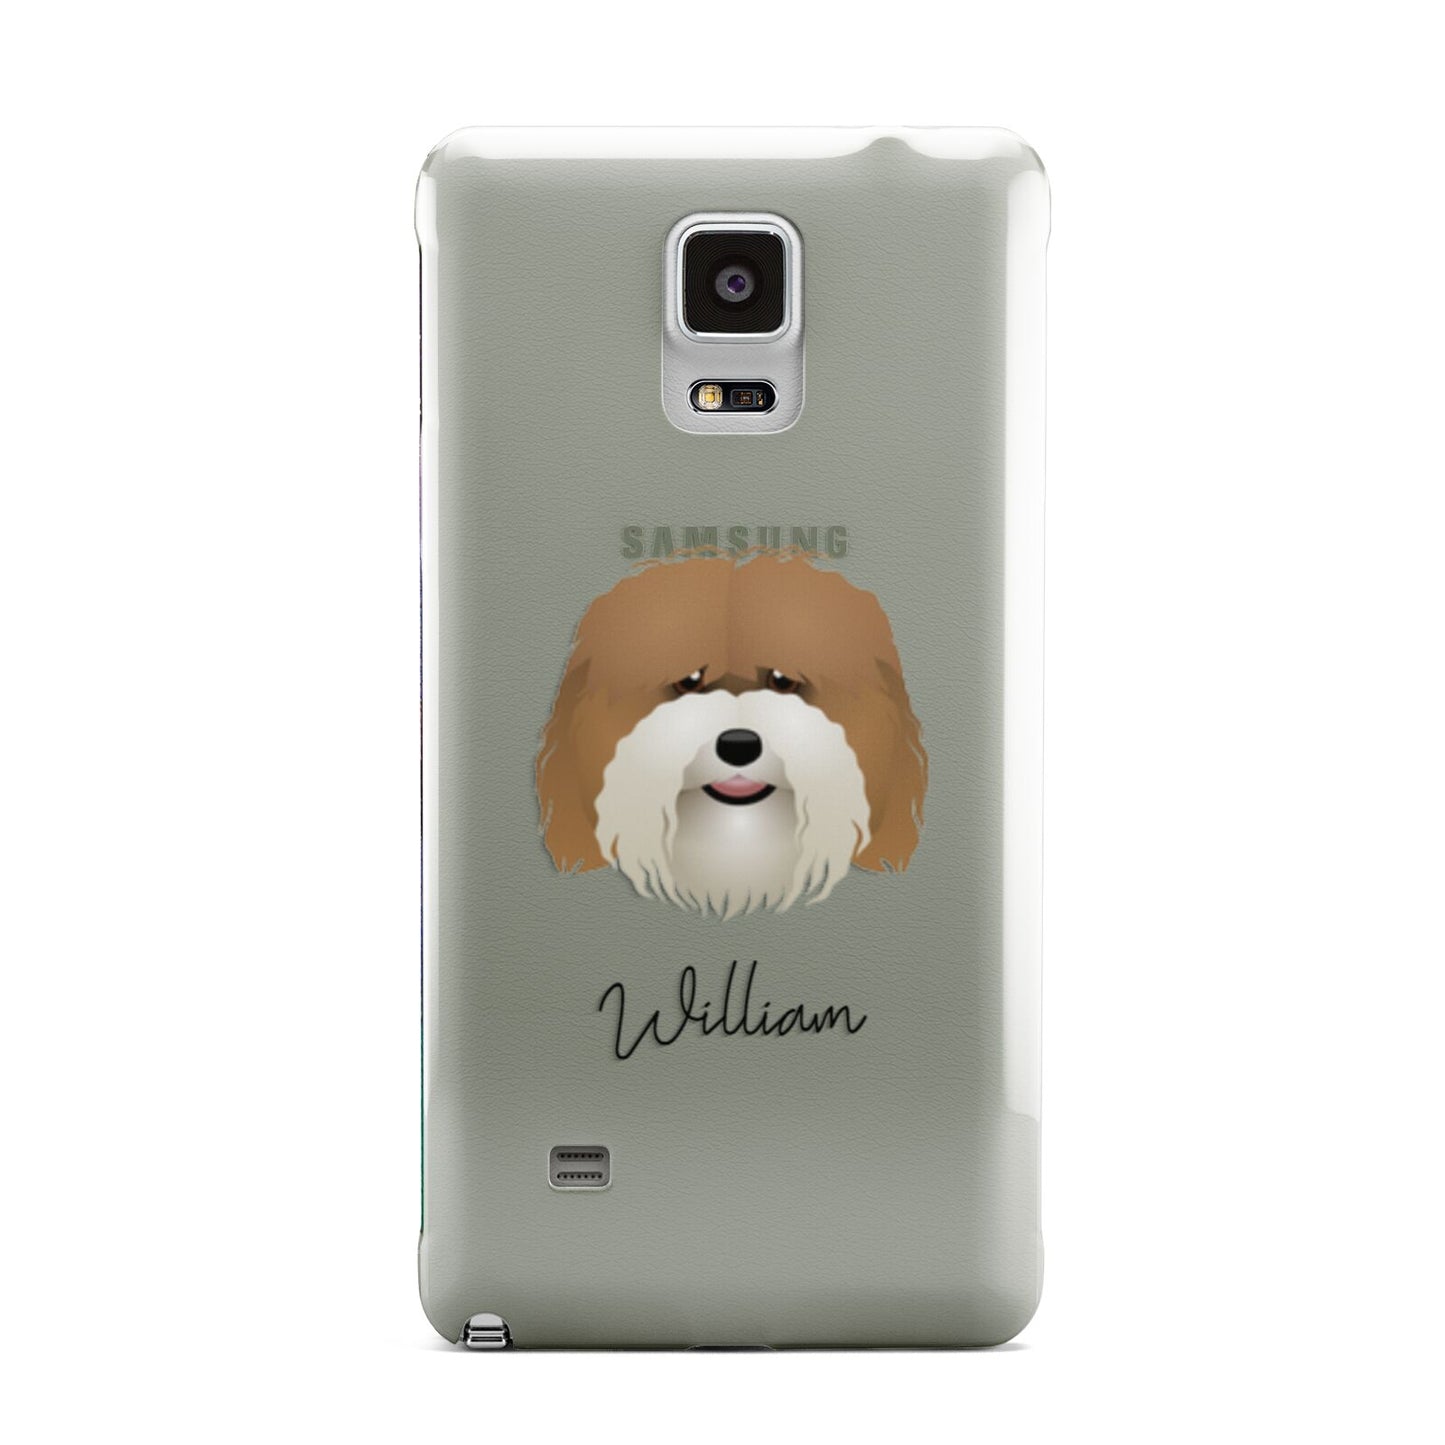 Coton De Tulear Personalised Samsung Galaxy Note 4 Case